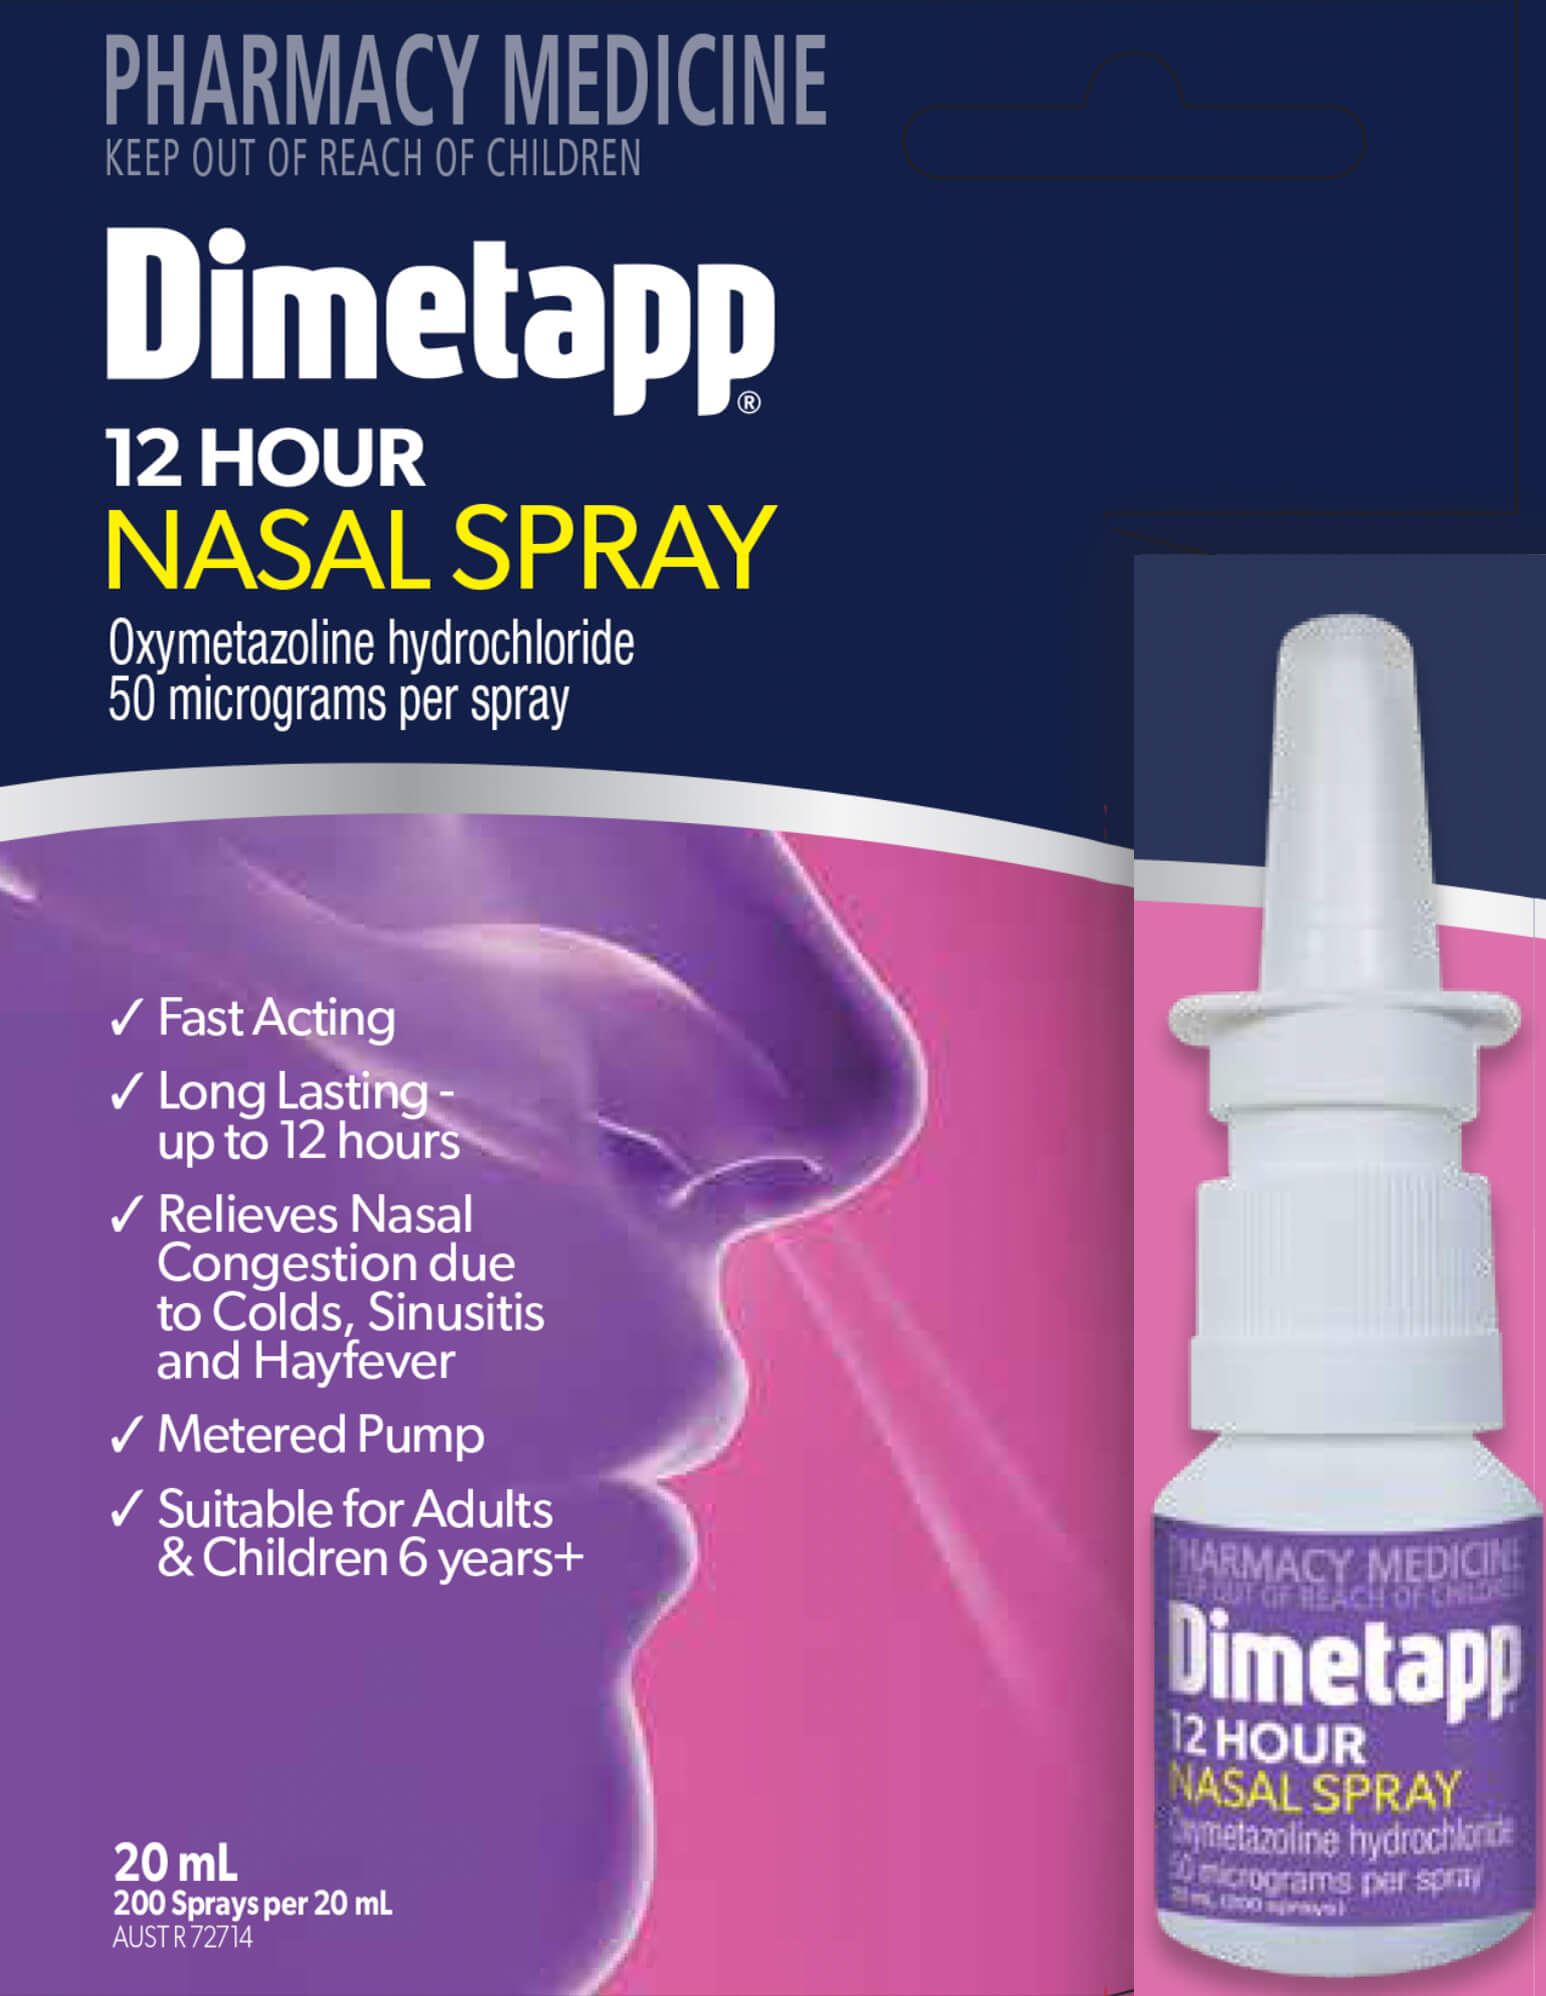 Dimetapp 12 hour nasal spray